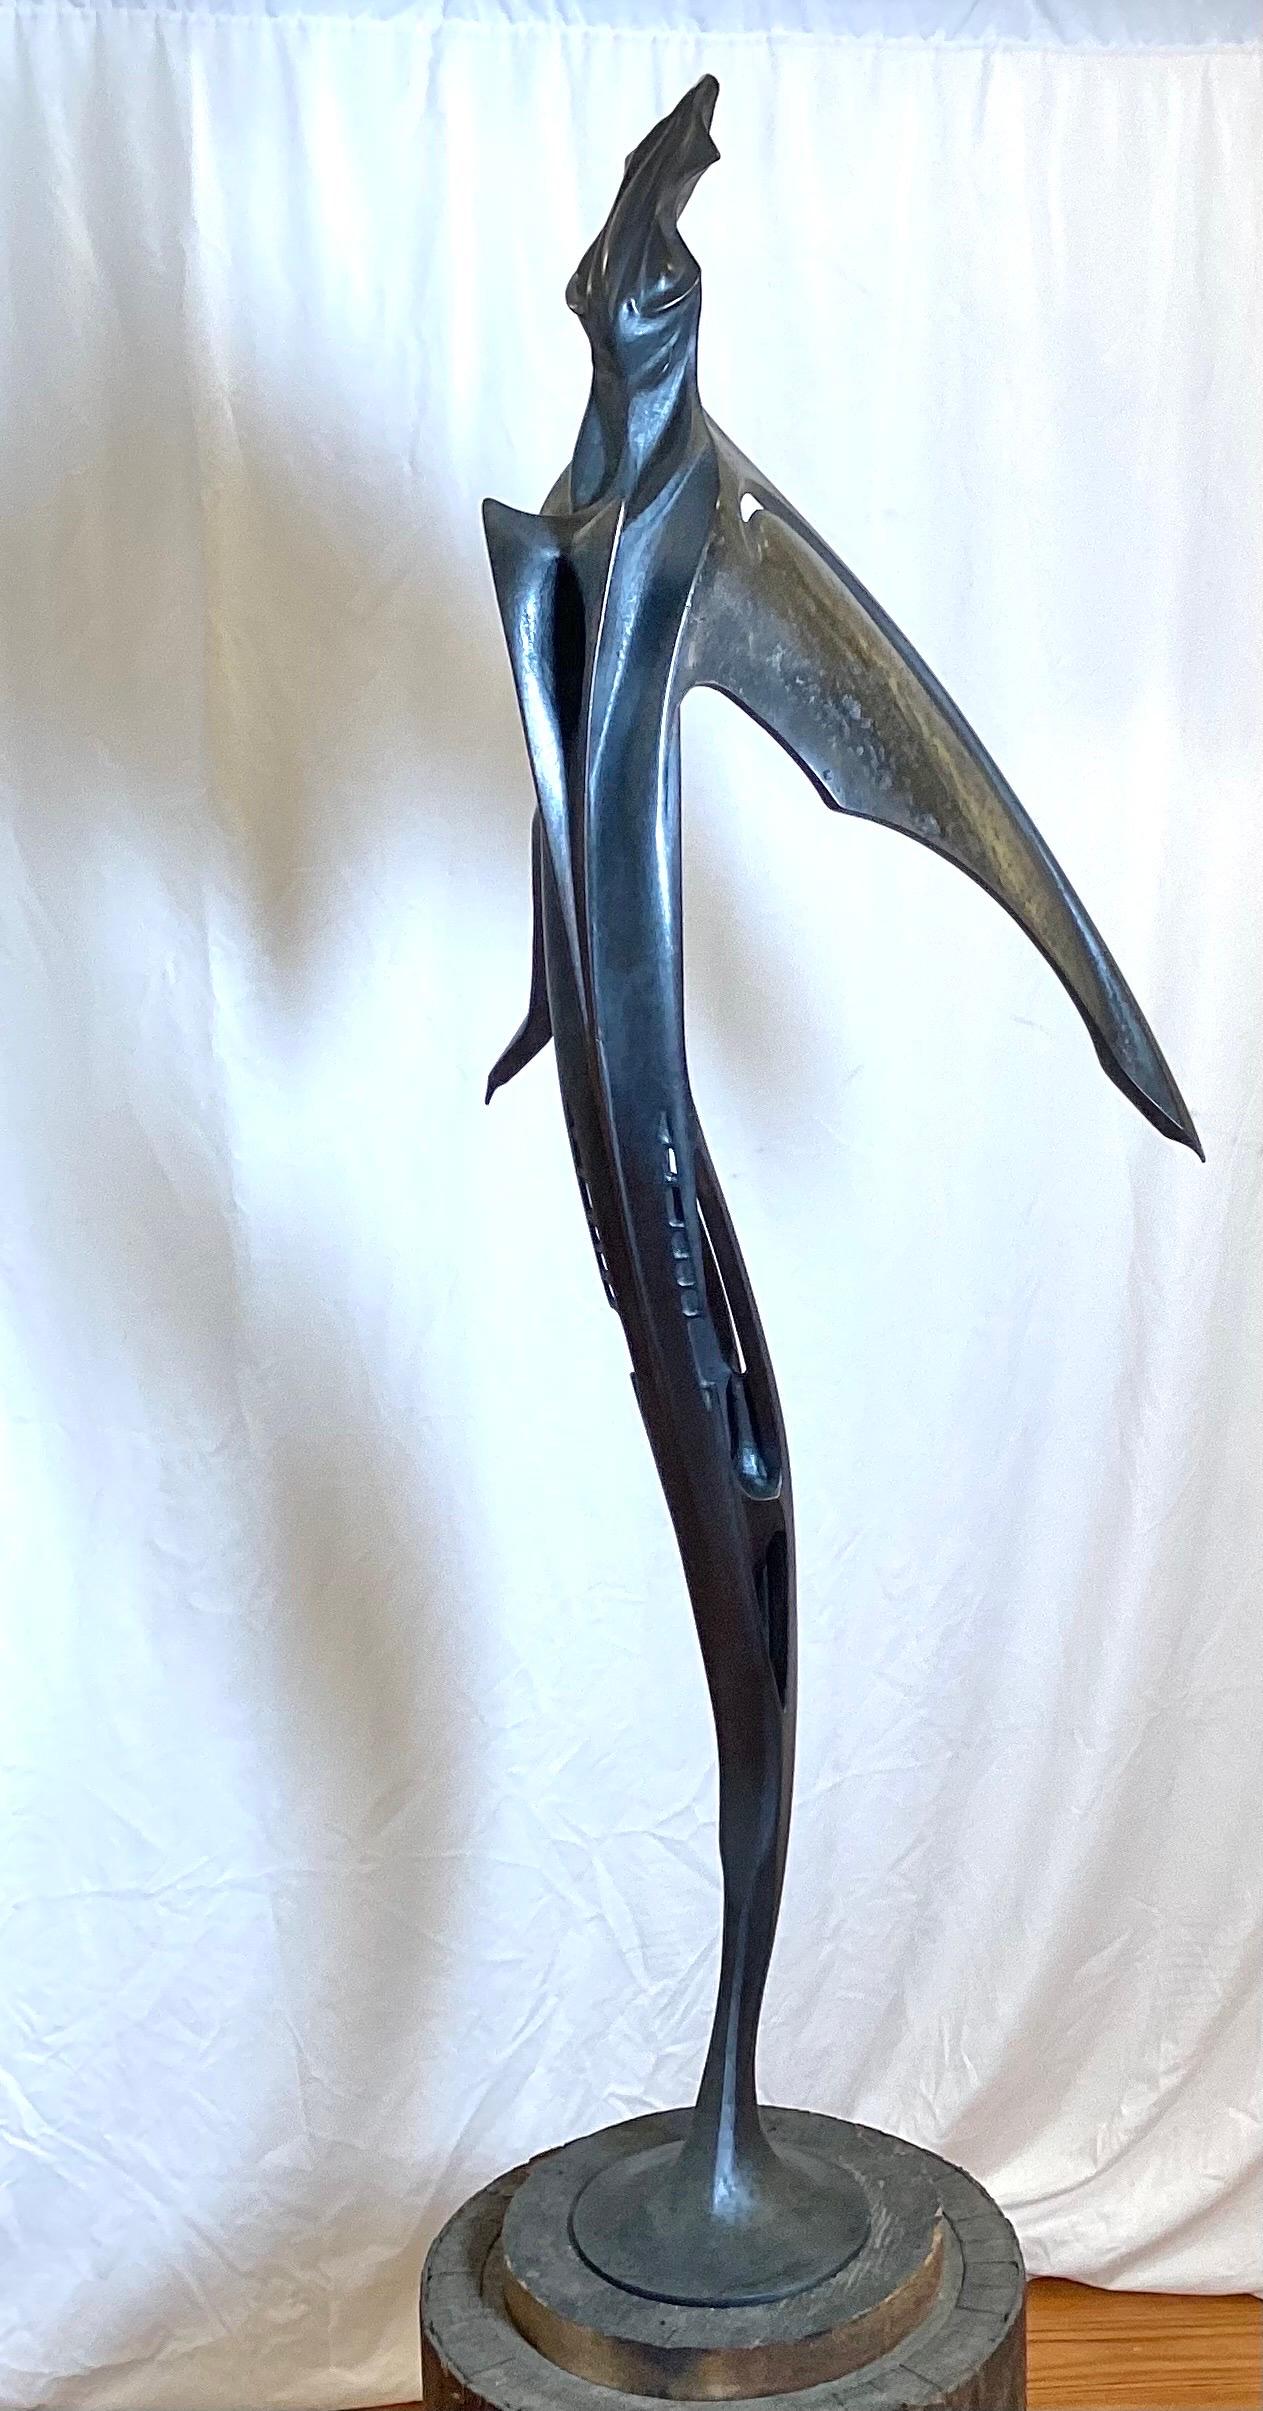 Tis ist eine einzigartige hohe, schlanke Skulptur aus patinierter Bronze von Lawrence Welker IV.  Er lässt sich auf dem Sockel drehen, so dass er von allen Seiten betrachtet werden kann.  51 Zoll groß, signiert in der Nähe des Sockels. 

Lawrence